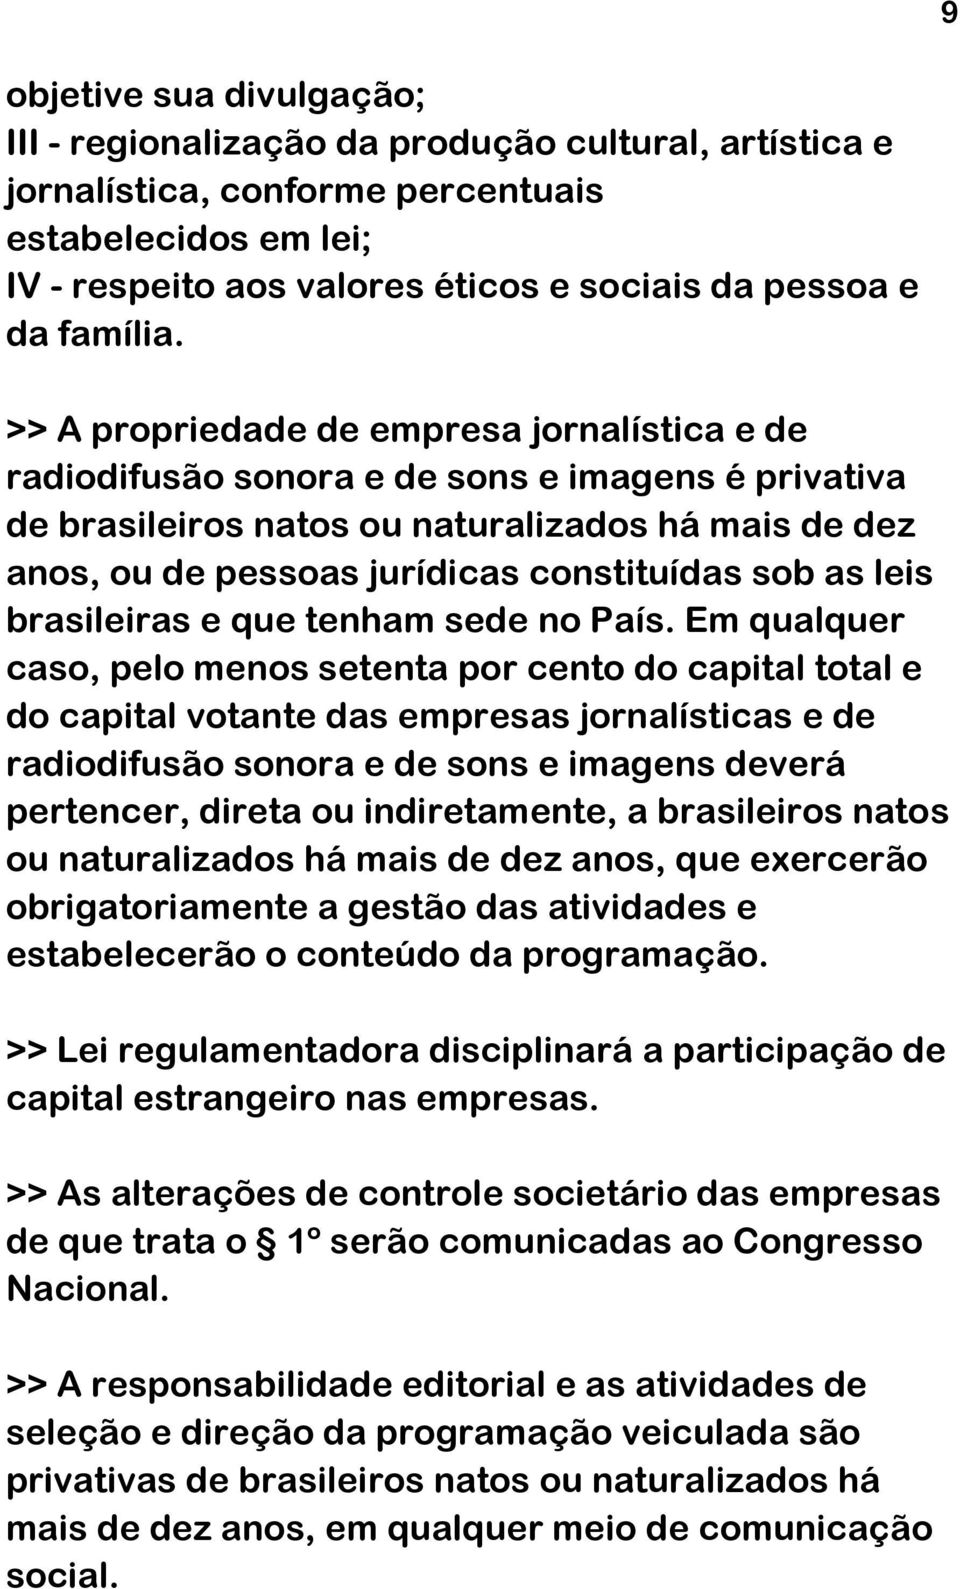 >> A propriedade de empresa jornalística e de radiodifusão sonora e de sons e imagens é privativa de brasileiros natos ou naturalizados há mais de dez anos, ou de pessoas jurídicas constituídas sob